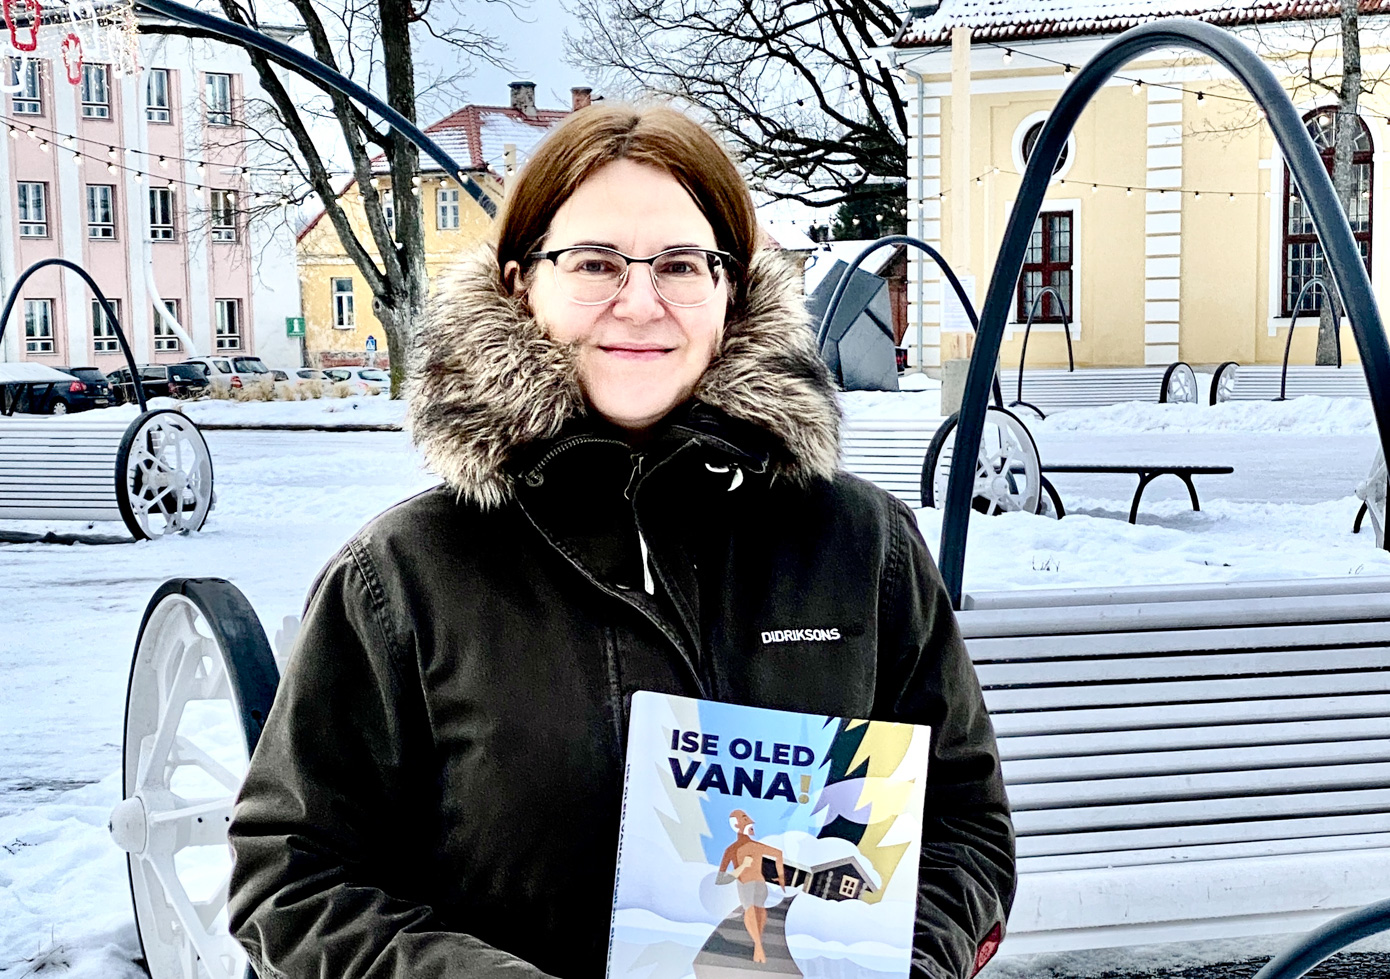 Liisa Pakosta Võru keskväljakul oma peatoimetatud raamatuga, mida pakume nüüd ka oma headele tellijaile. Fotod: ERAKOGU